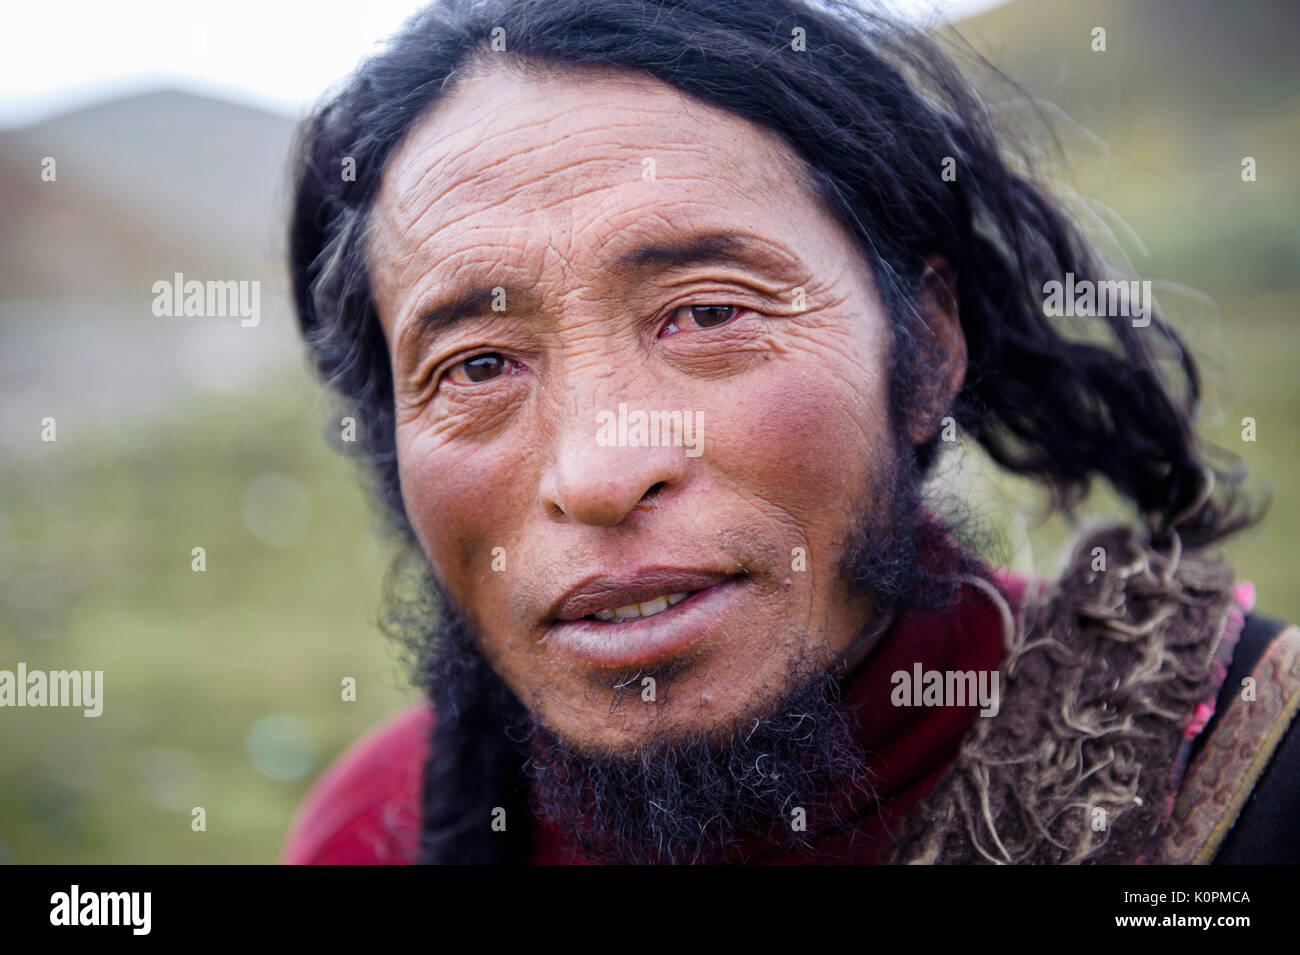 Retrato del hombre tibetano, la meseta tibetana, Kham y Amdo Foto de stock